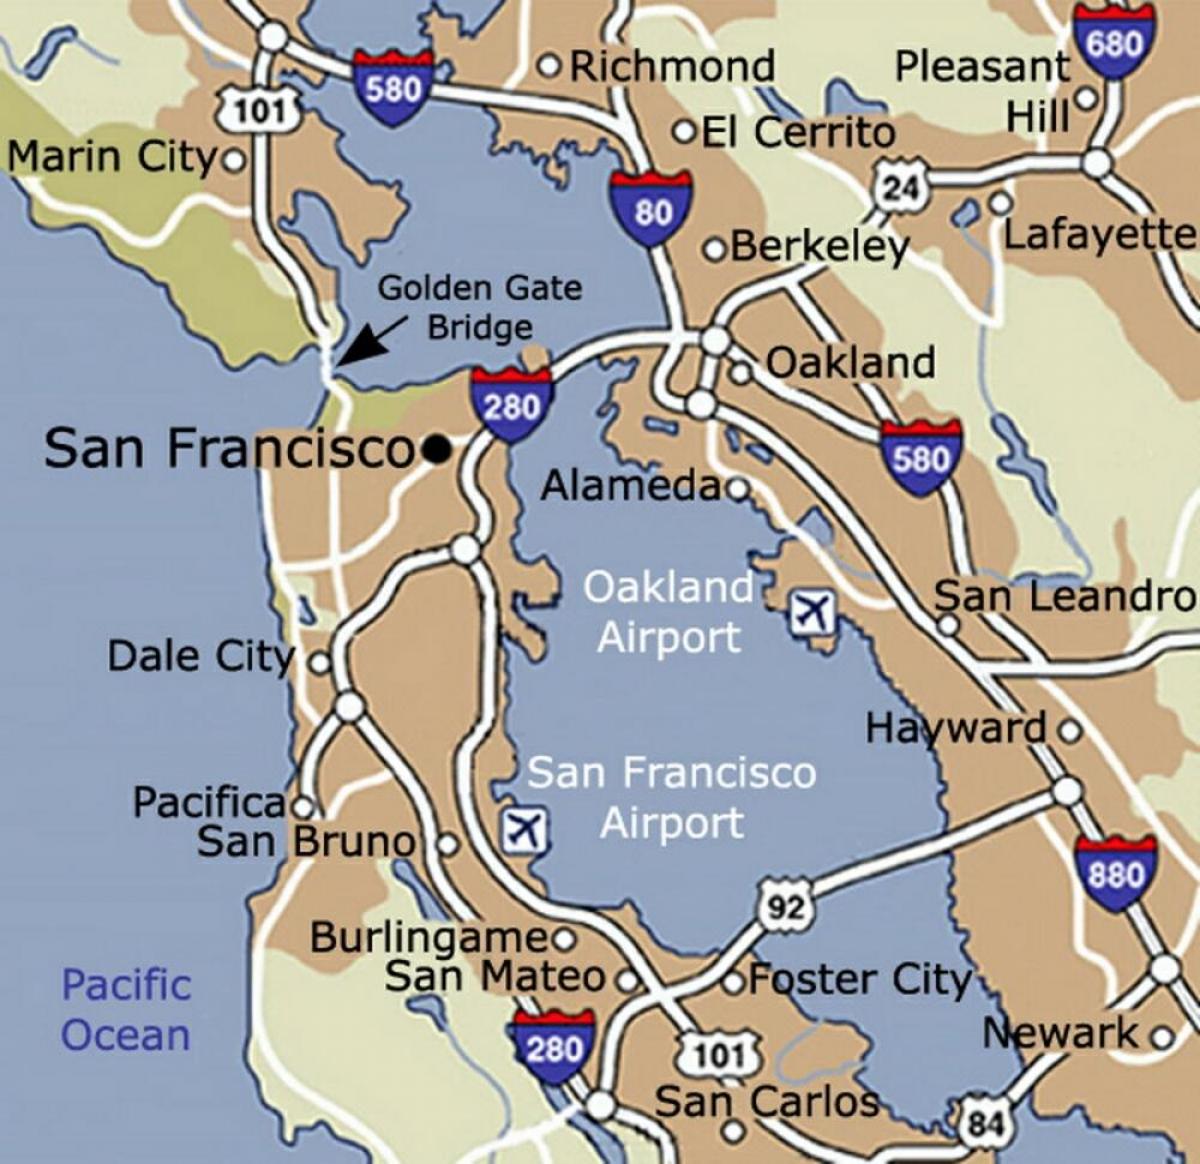 แผนที่ของซานฟรานซิสโกสนามบินและพื้นที่รอบๆบริเวณ